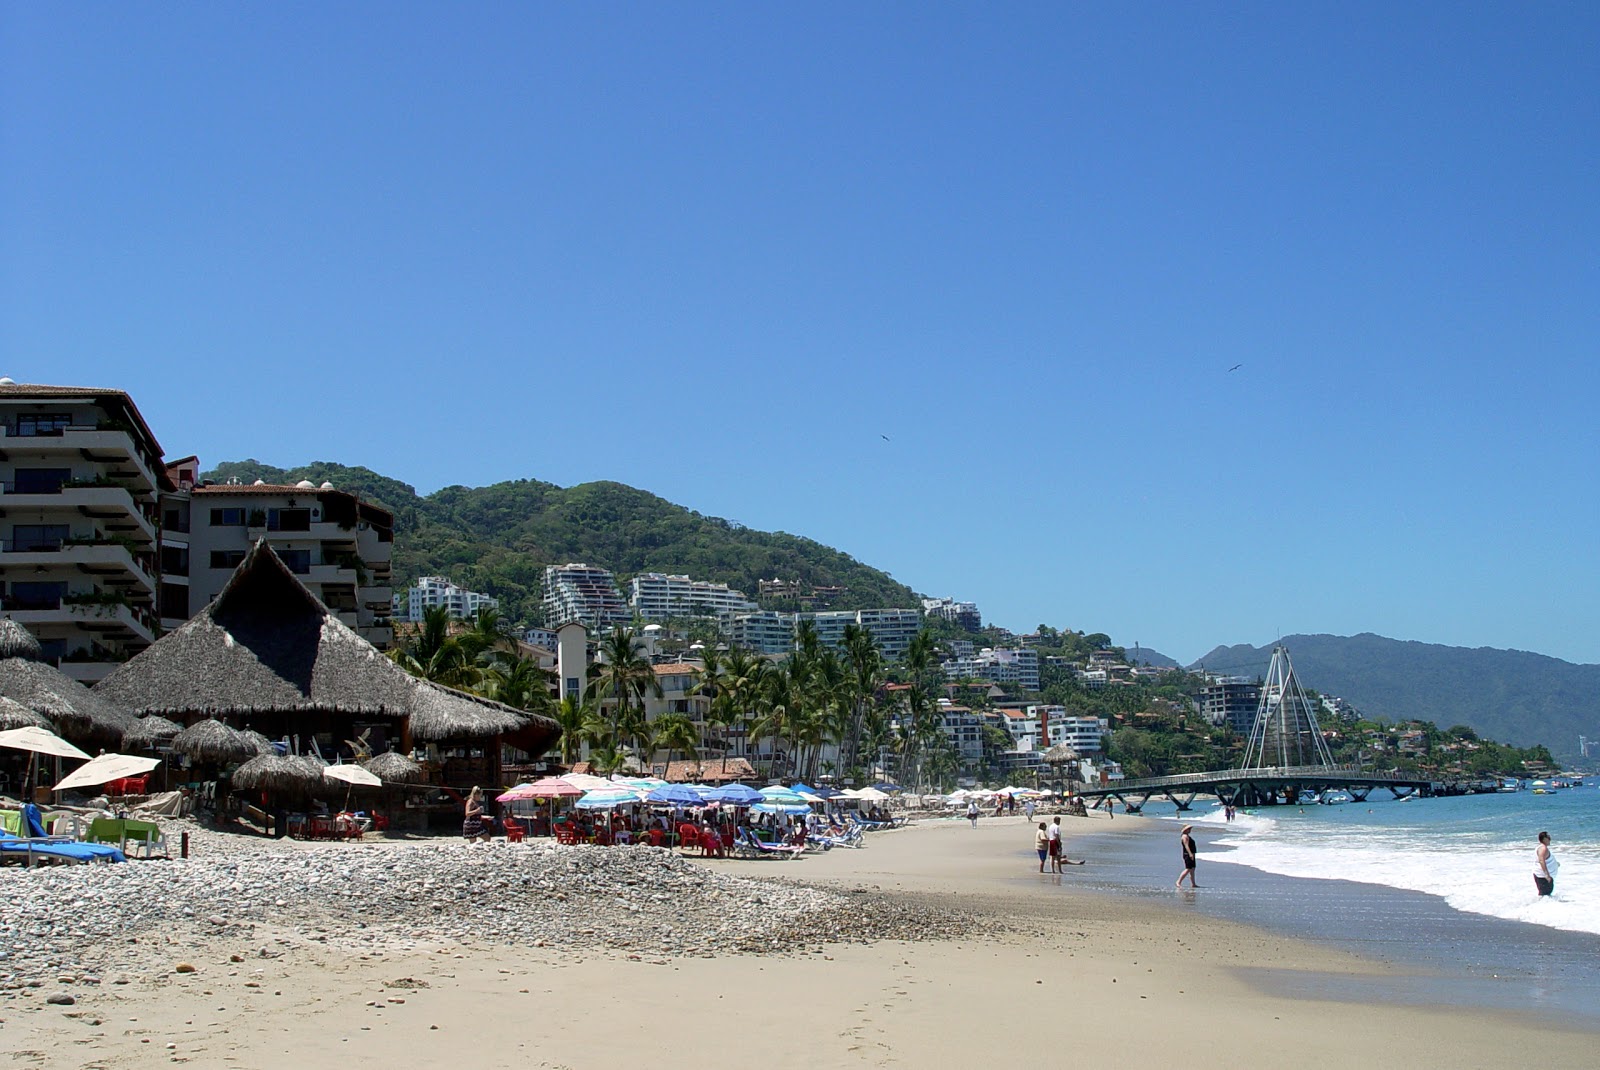 Foto af Olas Altas beach - populært sted blandt afslapningskendere